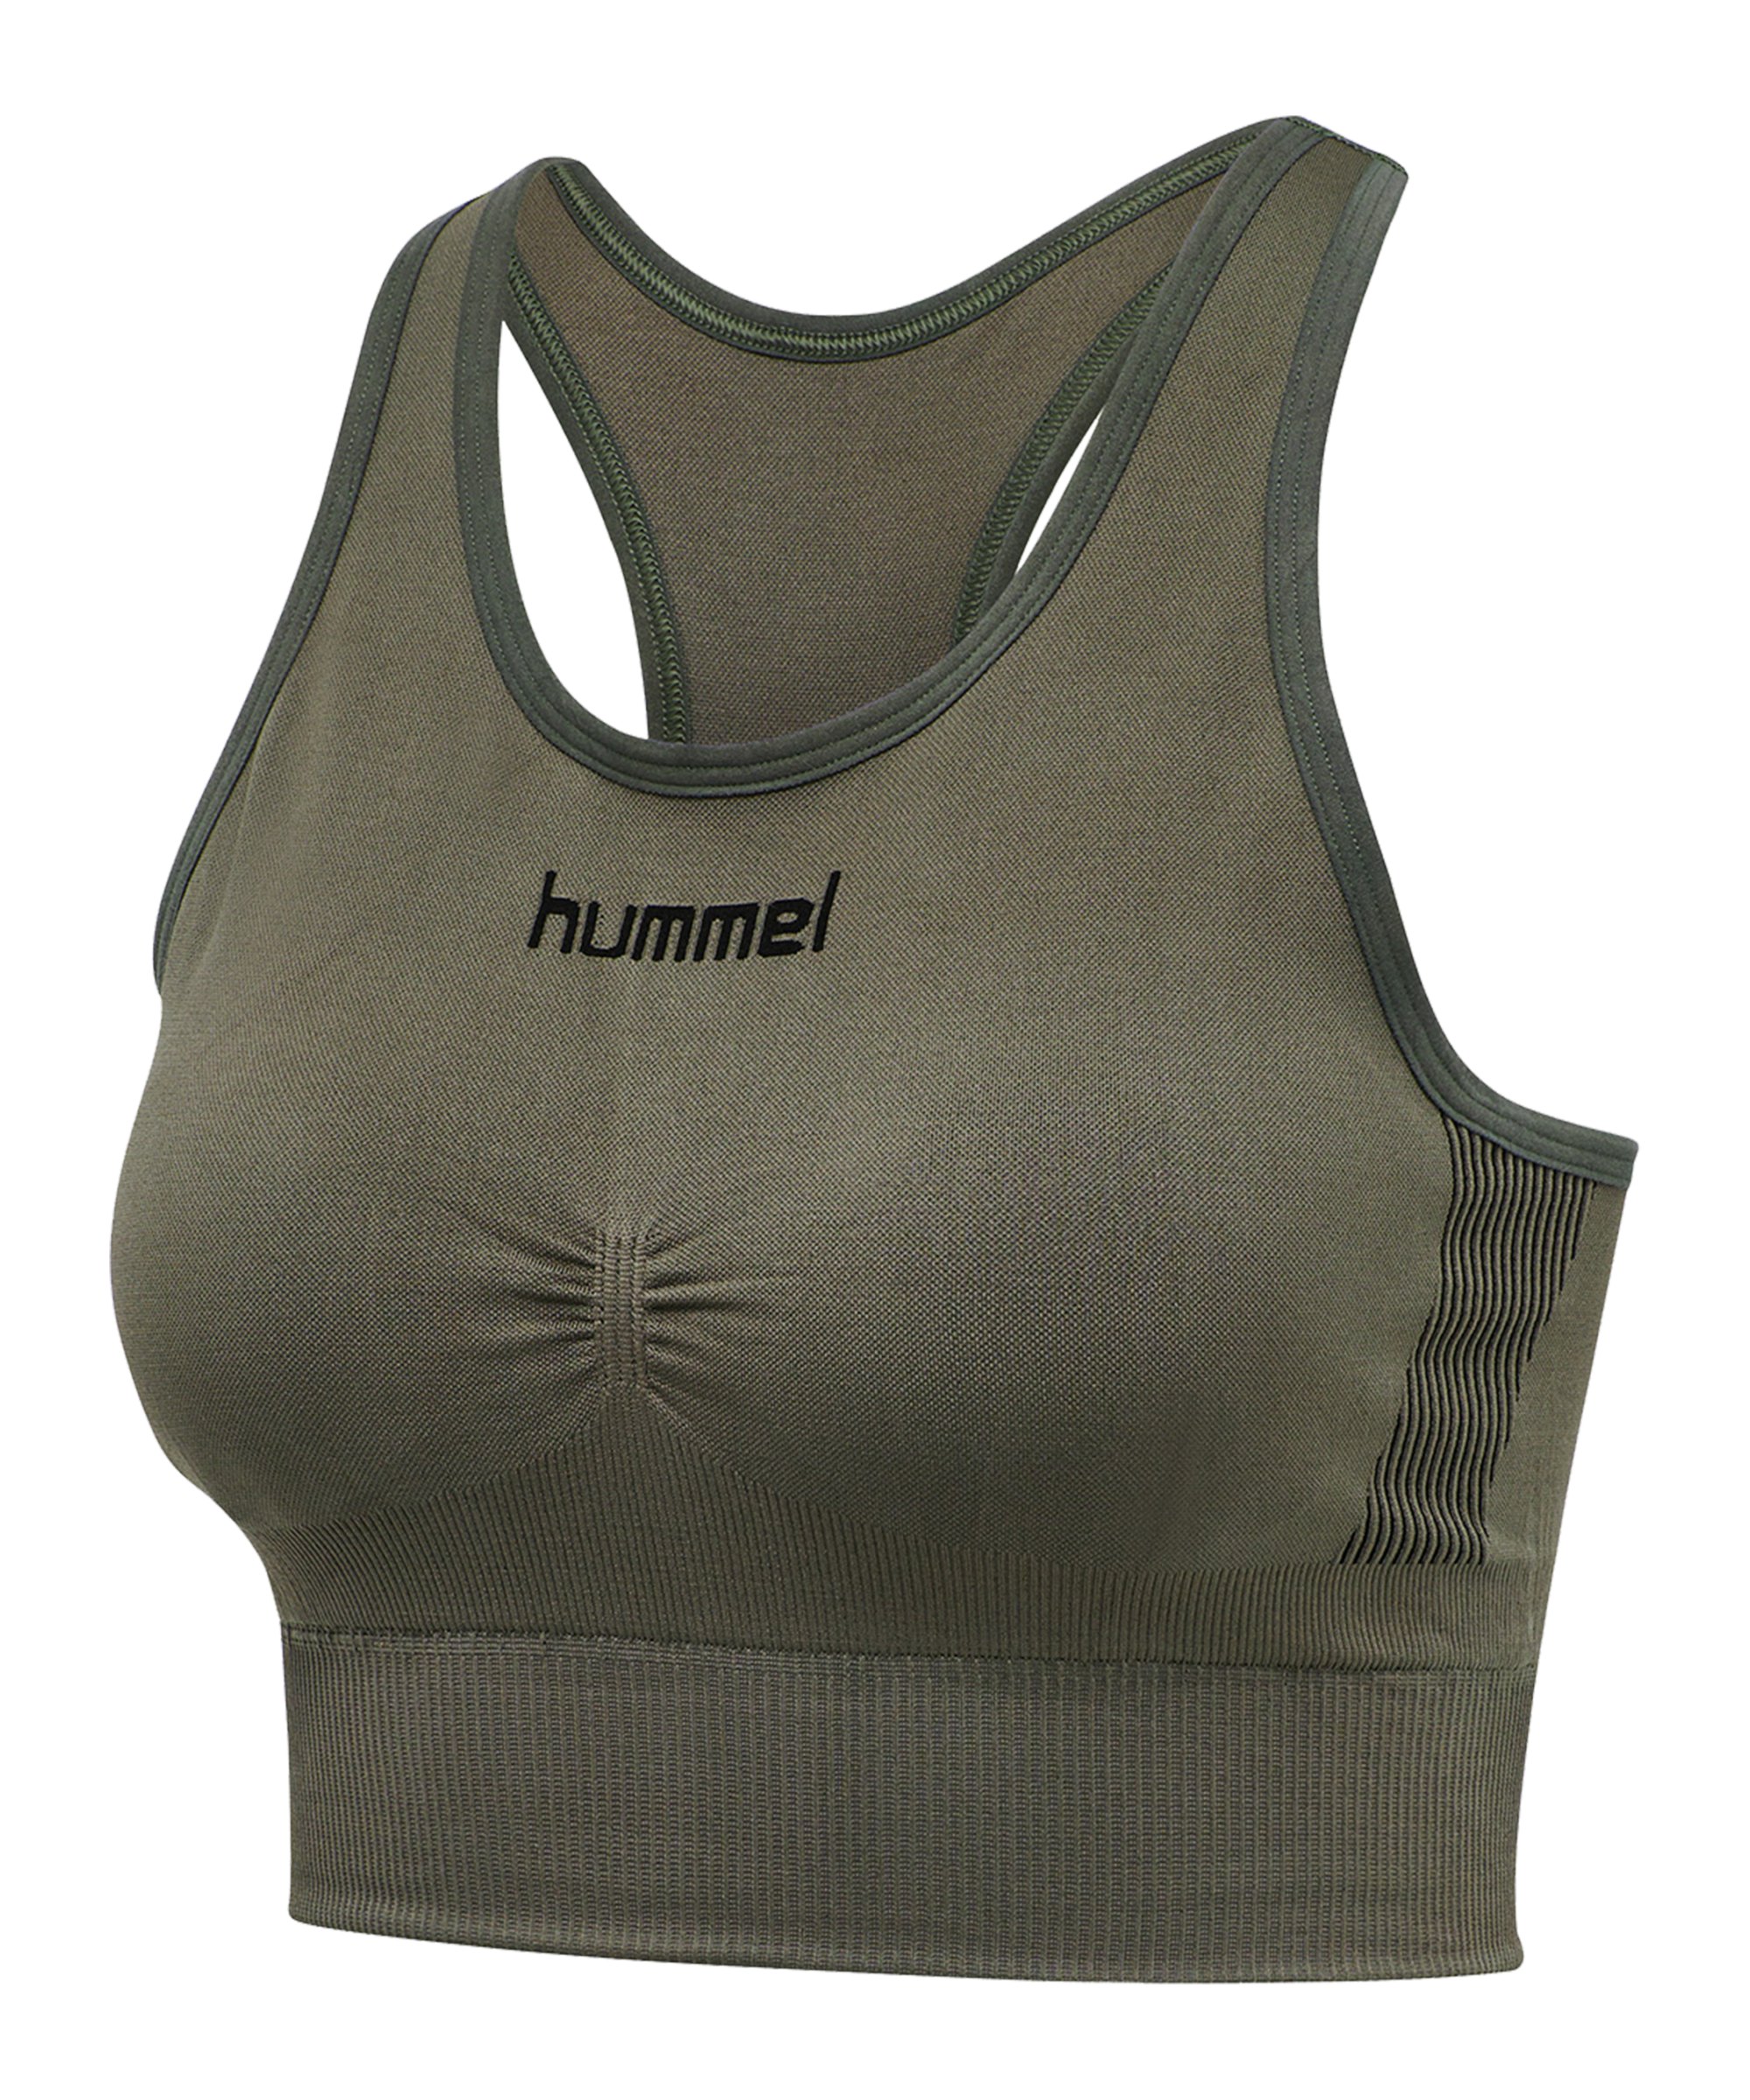 Hummel First Seamless Sport-BH Bra Damen F6084 - khaki